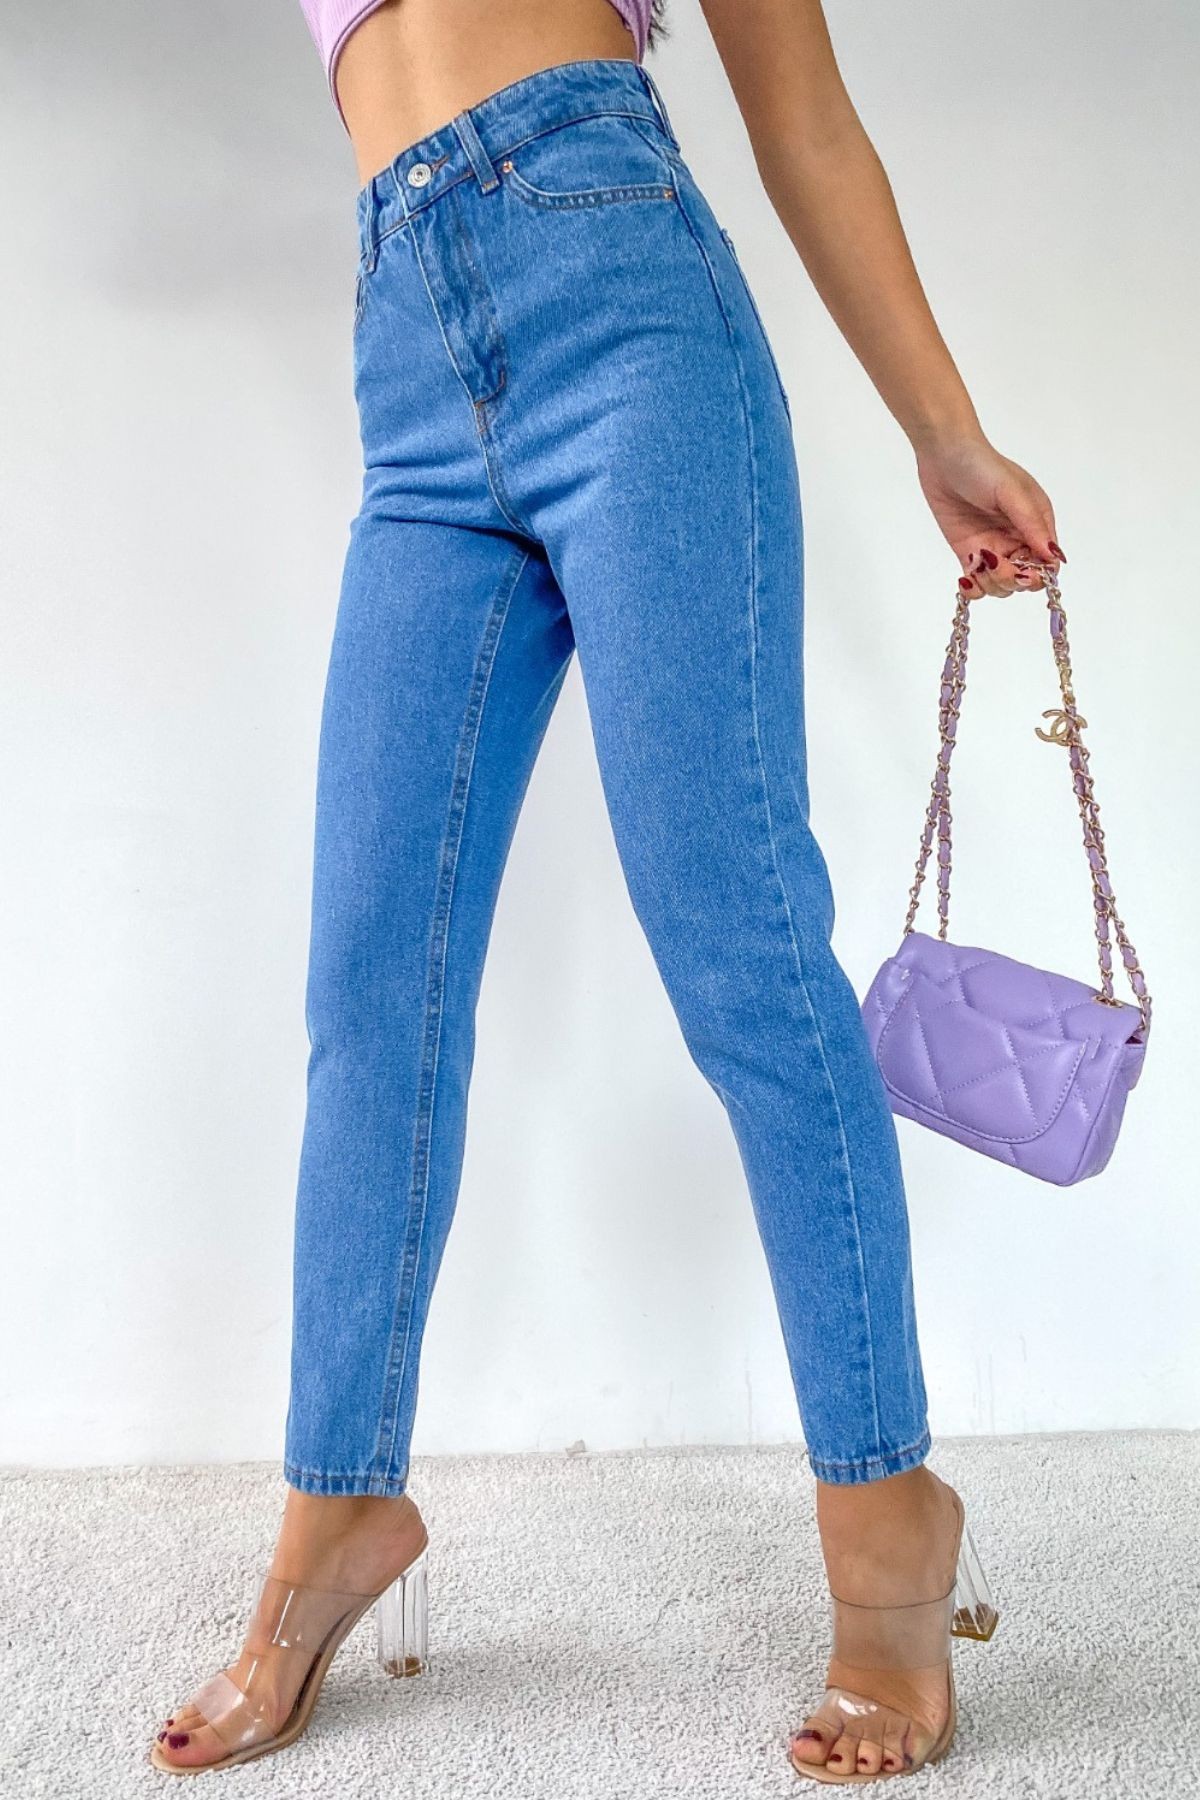 Kadın Yüksek Bel Mom Jeans Kot Pantolon - Mavi